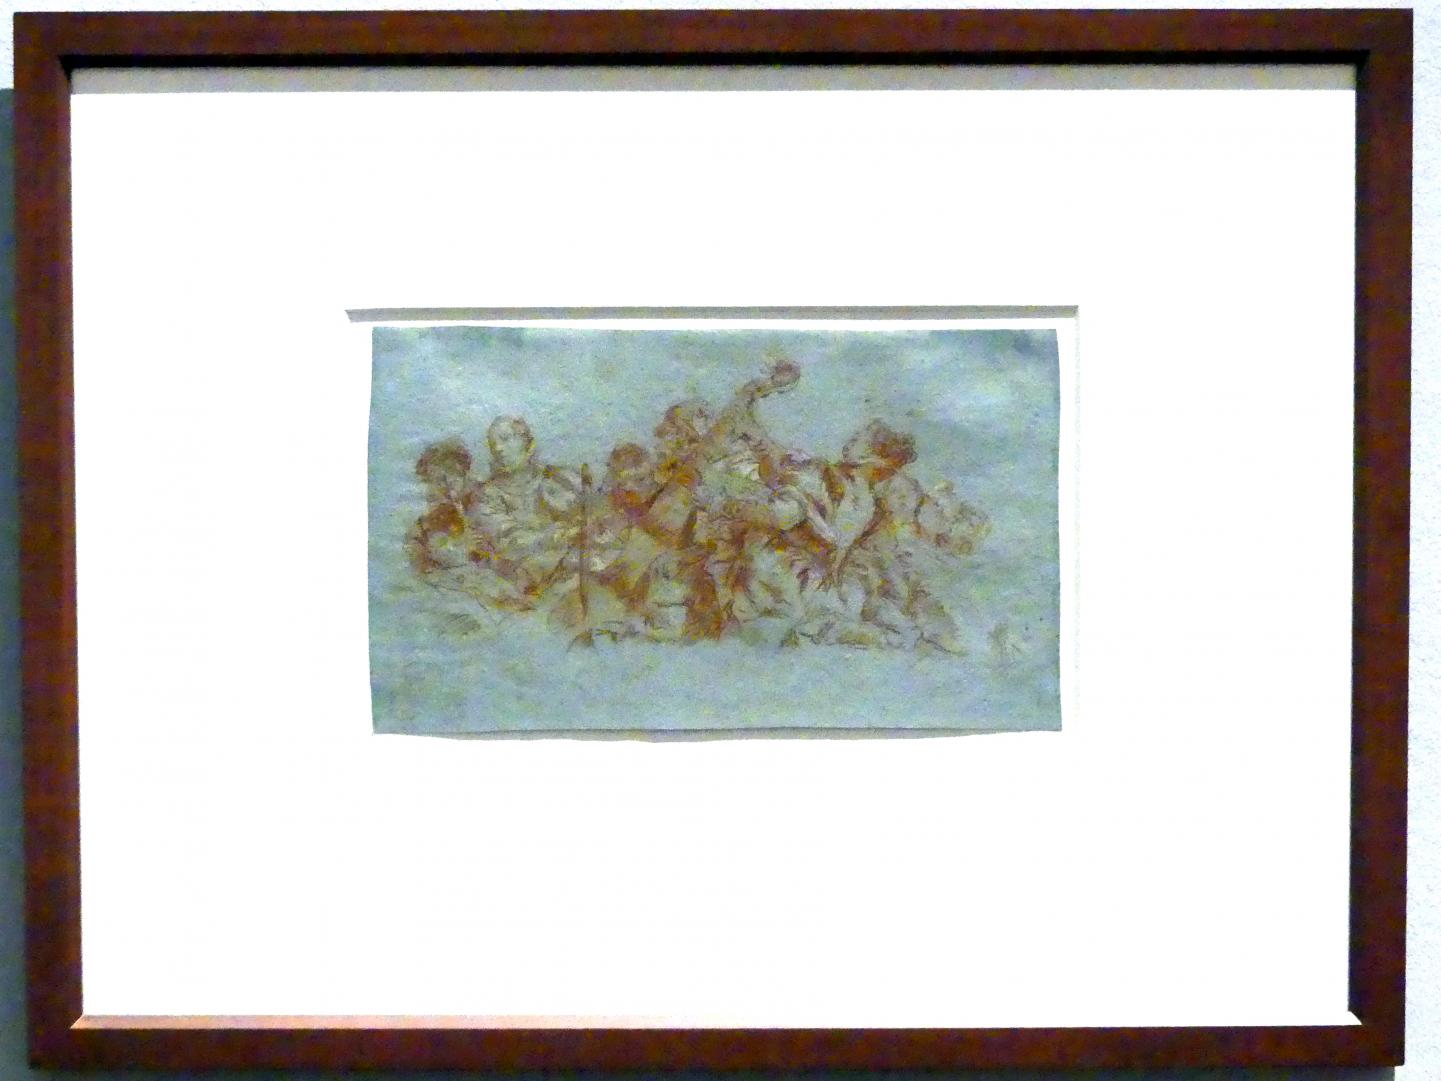 Giovanni Domenico Tiepolo (1743–1785), Gruppe von Musizierenden, Stuttgart, Staatsgalerie, Ausstellung "Tiepolo"  vom 11.10.2019 - 02.02.2020, Saal 8: Die Würzburger Residenz, 1752, Bild 2/3